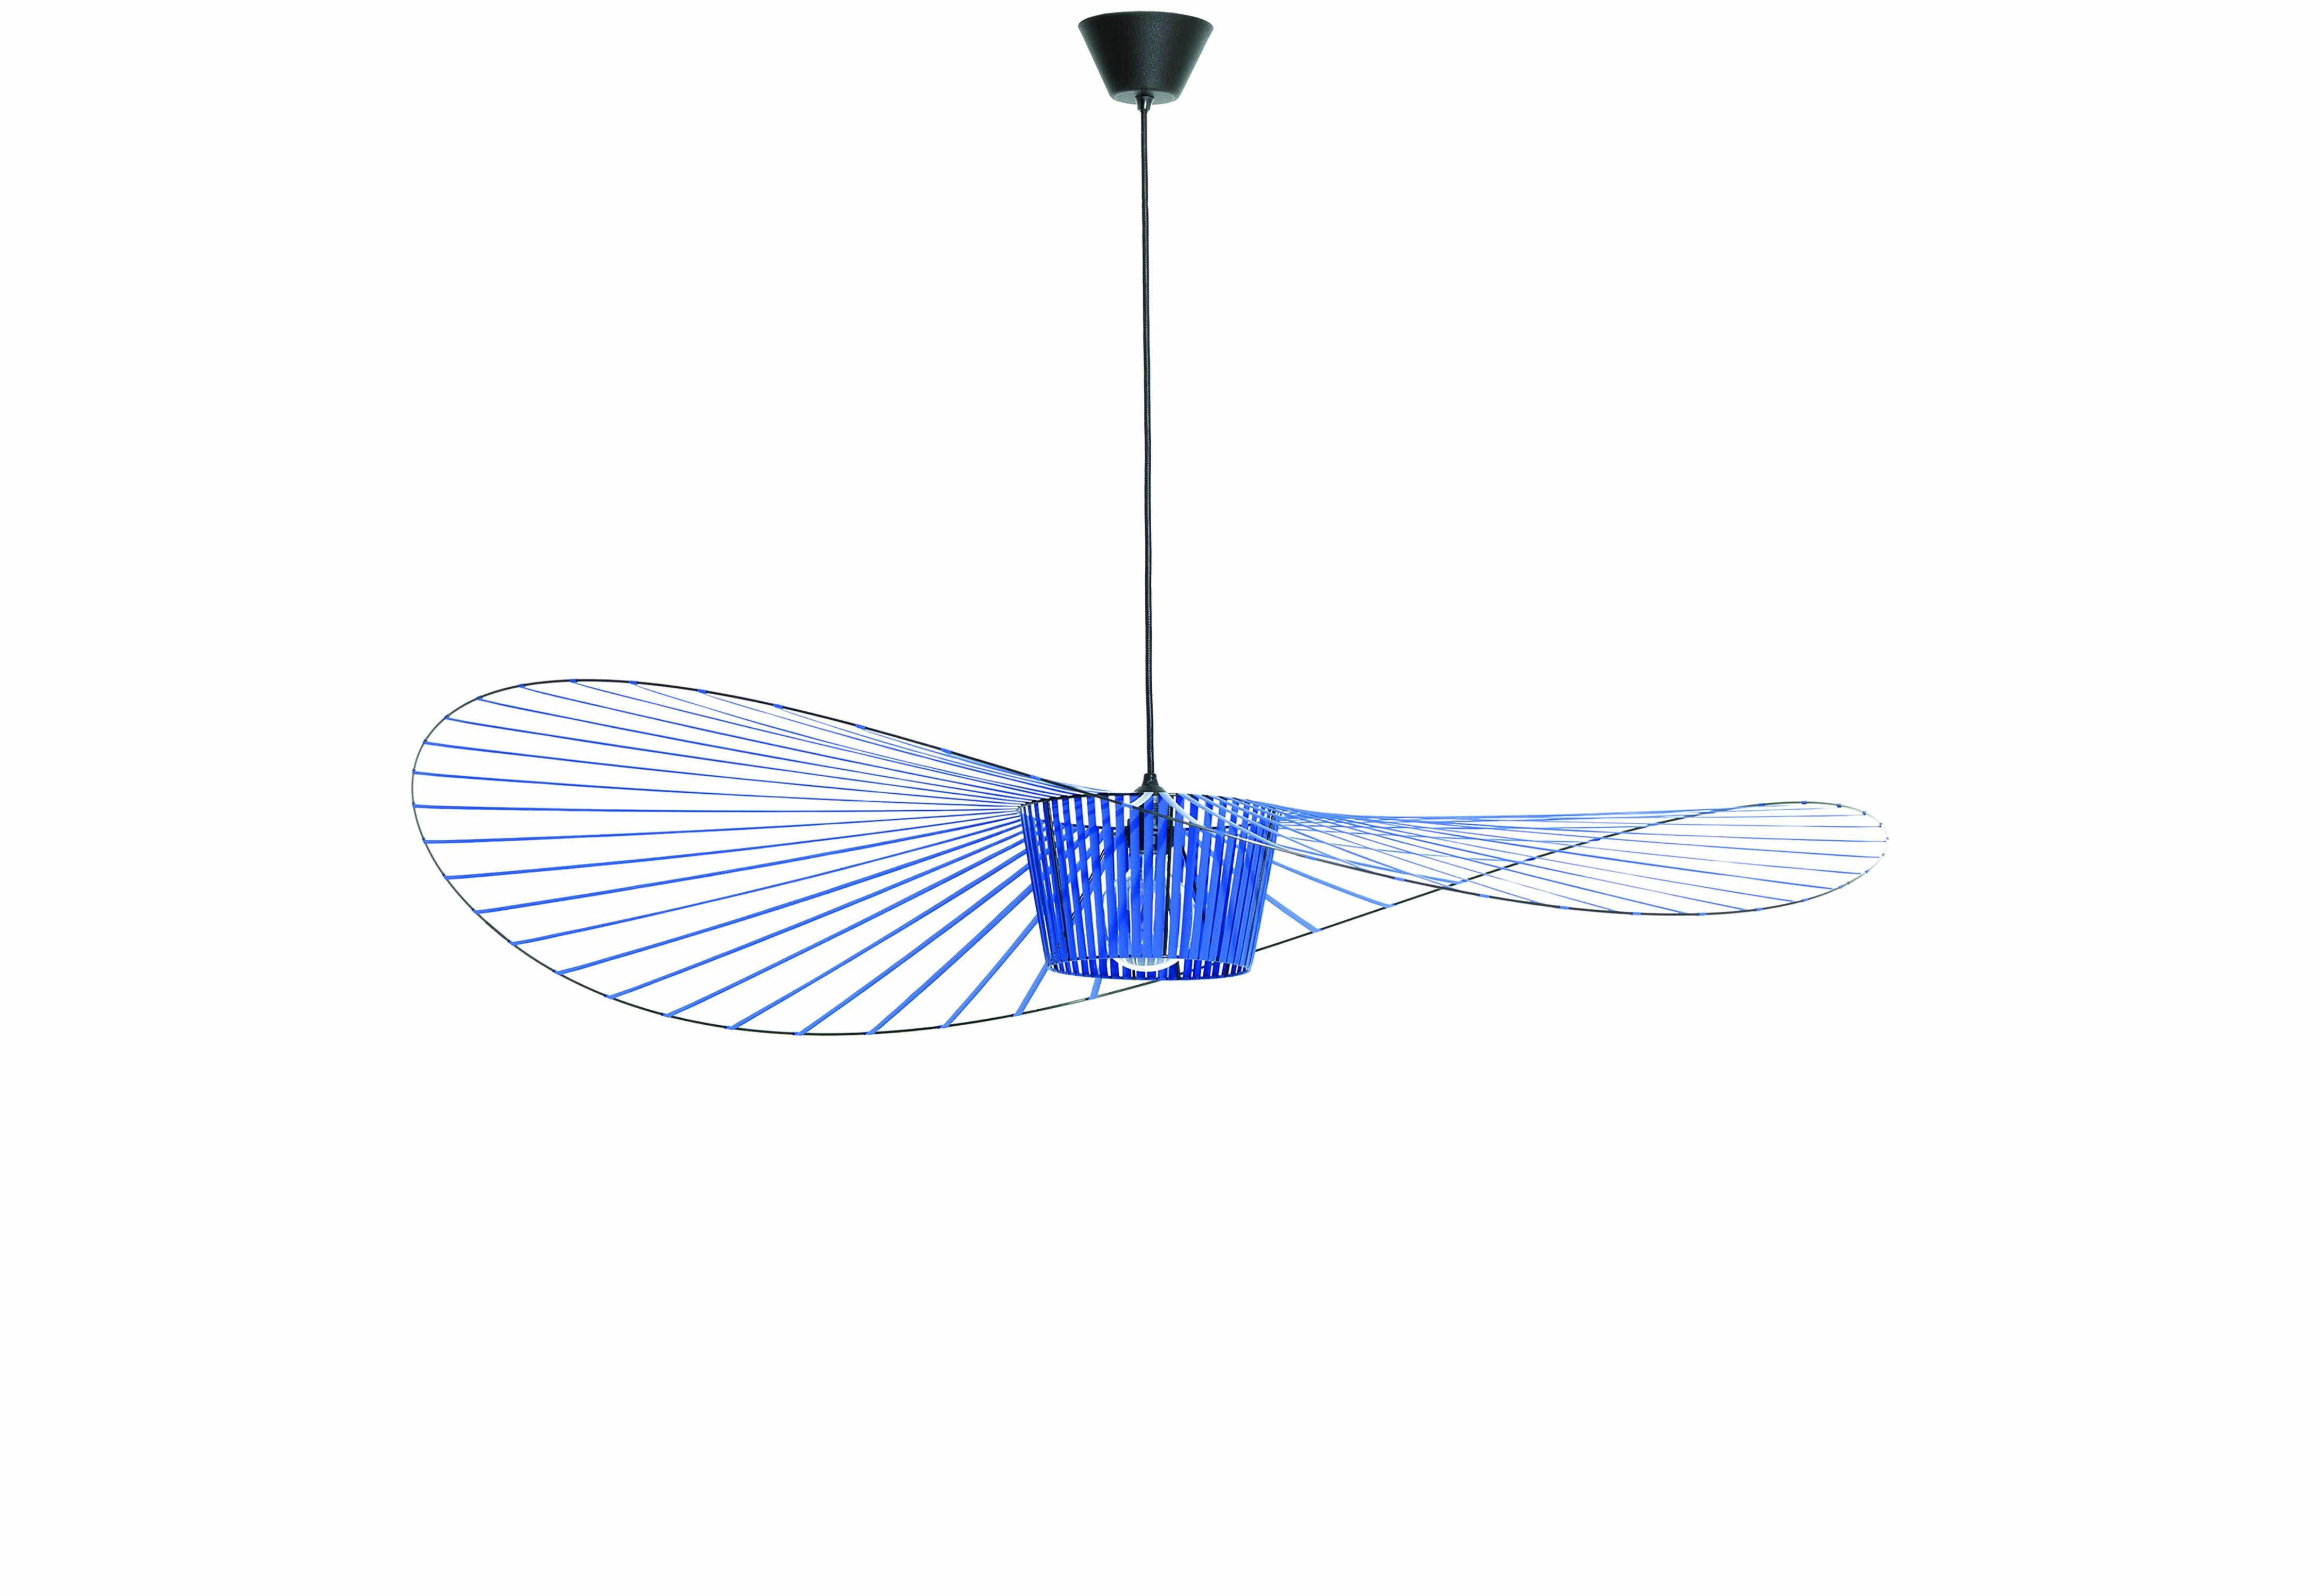 Petite Friture Medium Vertigo Suspension Light in Cobalt par Constance Guisset, 2010

Éditée par Petite Friture en 2010, la suspension Vertigo est aujourd'hui une icône du design contemporain. Avec sa structure ultra-légère en fibre de verre, tendue